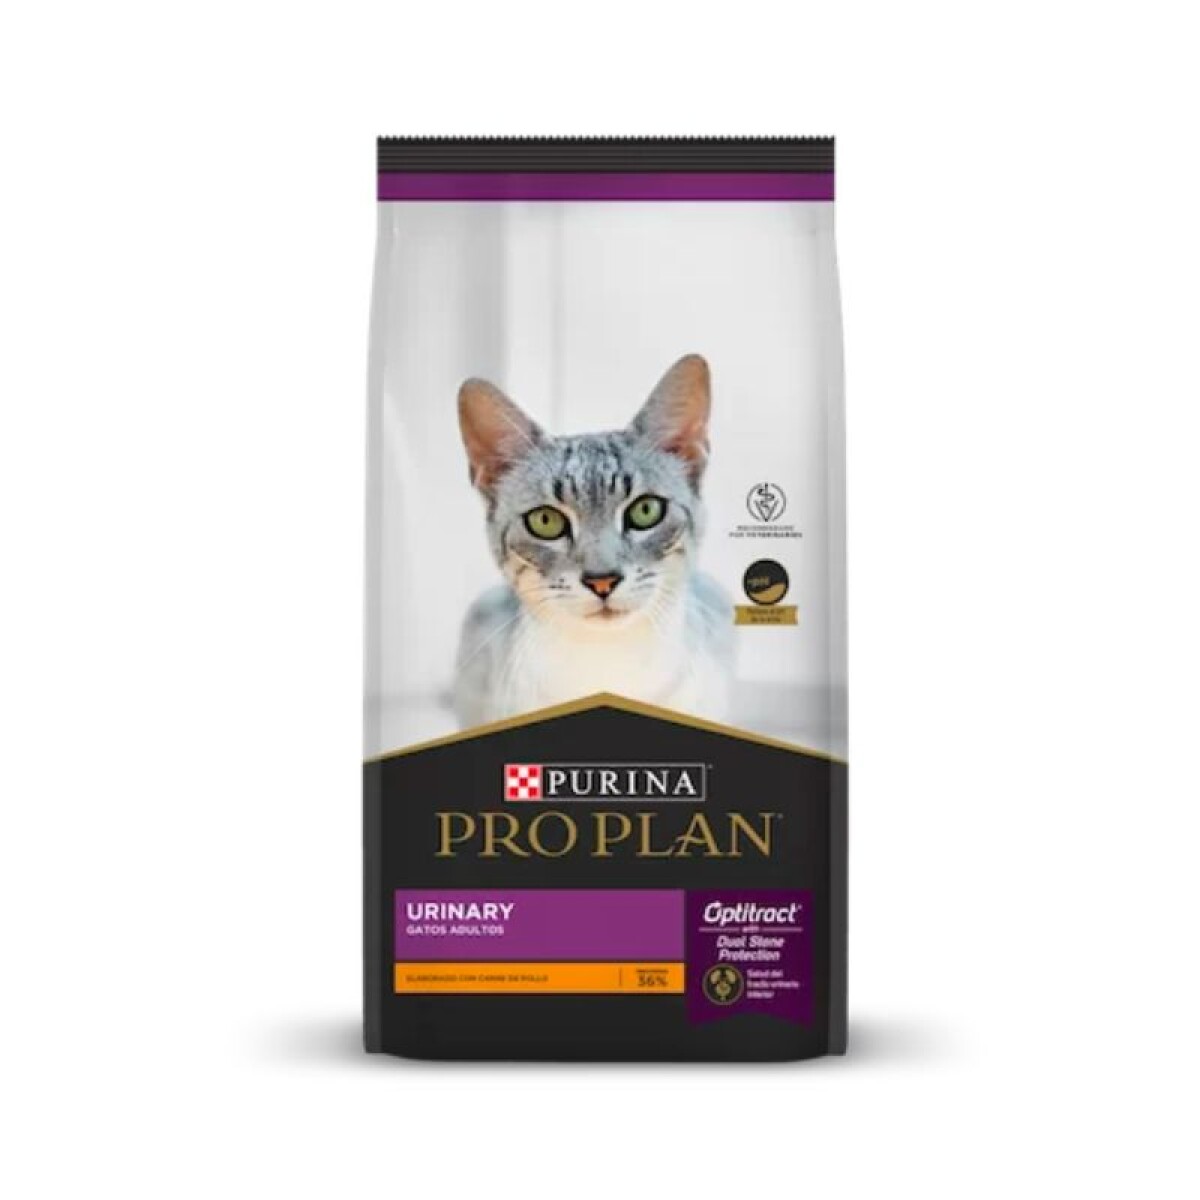 PROPLAN URINARY CAT 15KG - Proplan Urinary Cat 15kg 